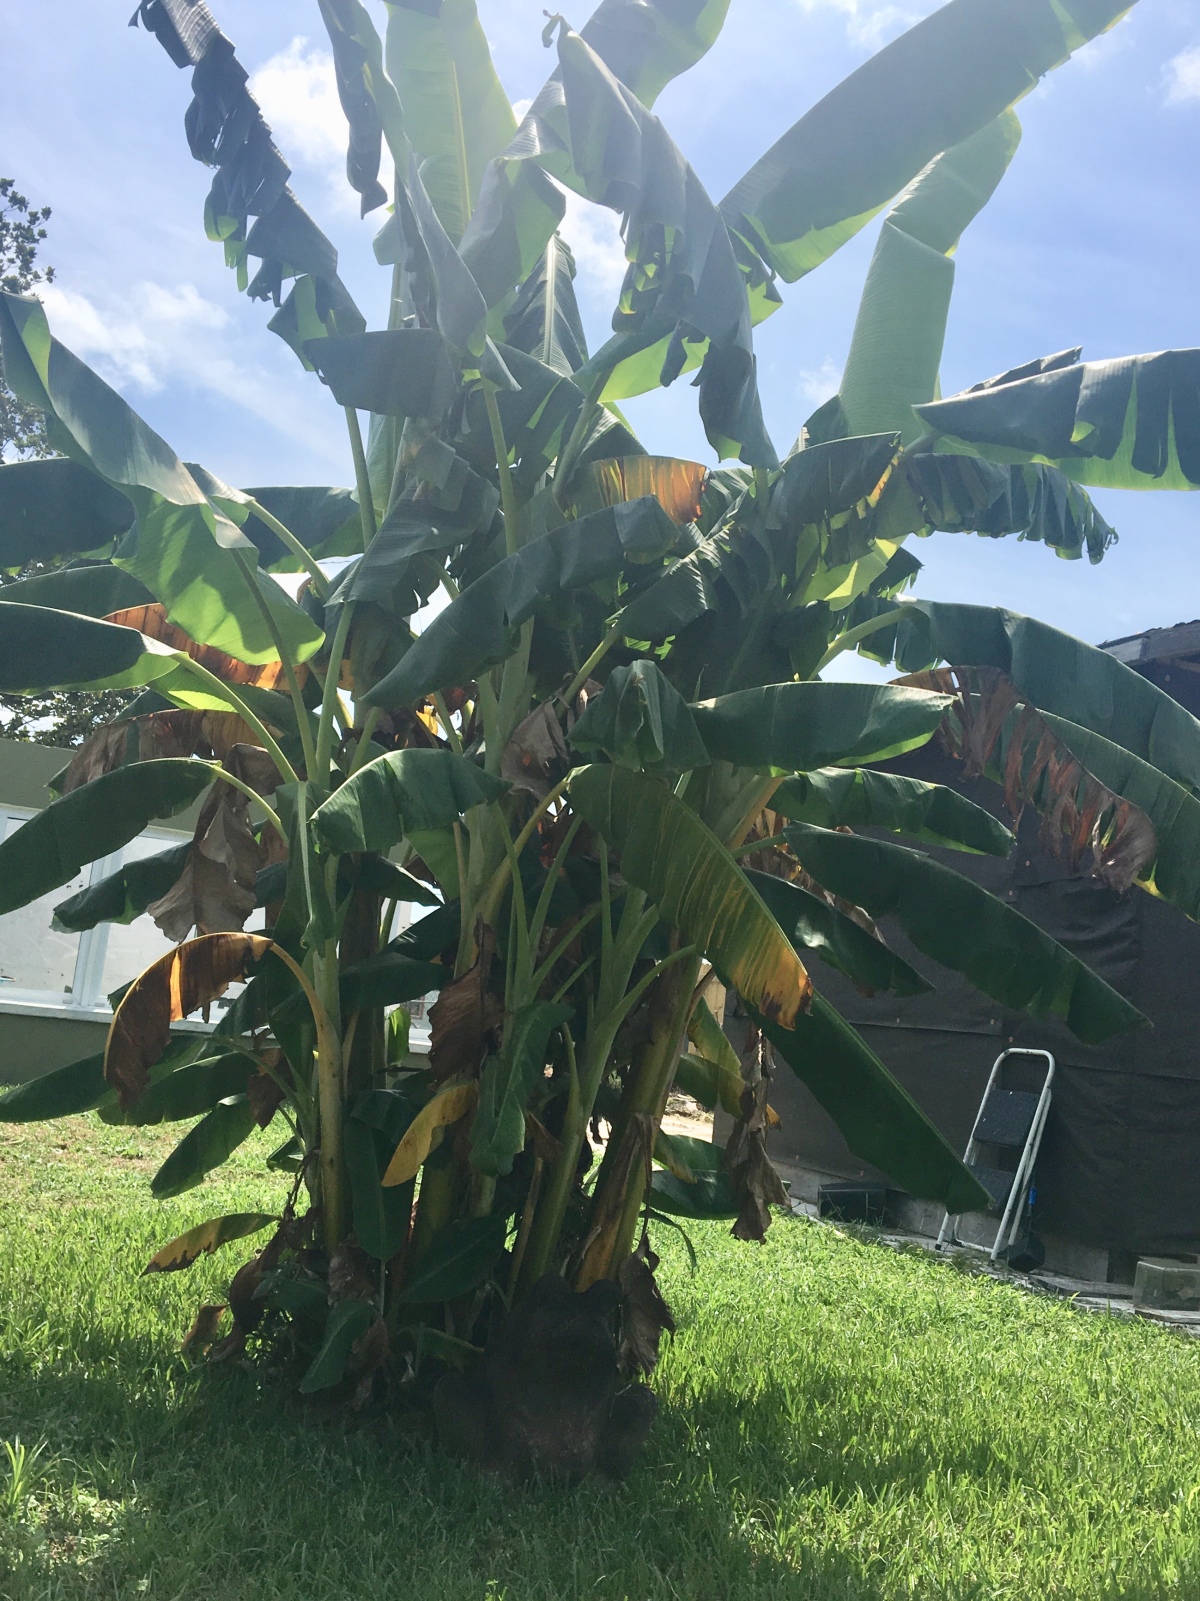 This old banana tree